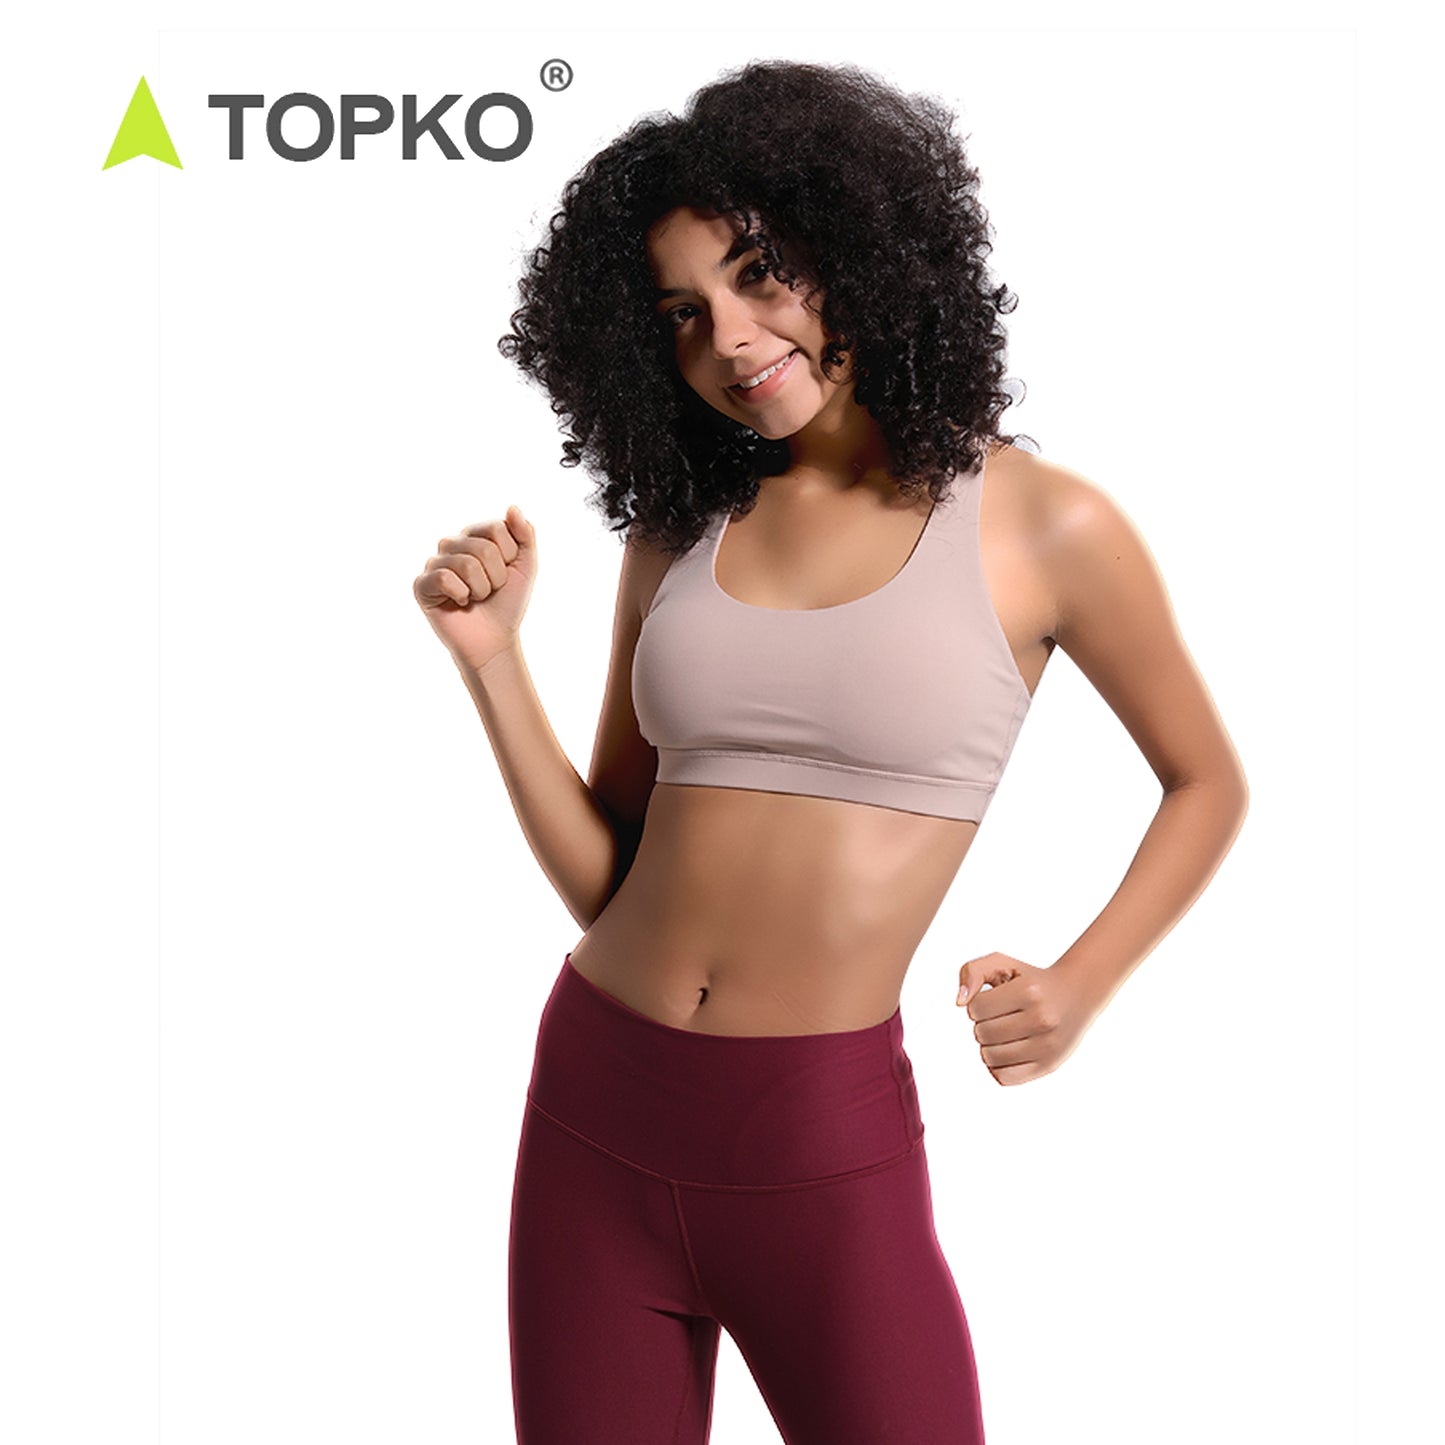 TOPKO Active Wear